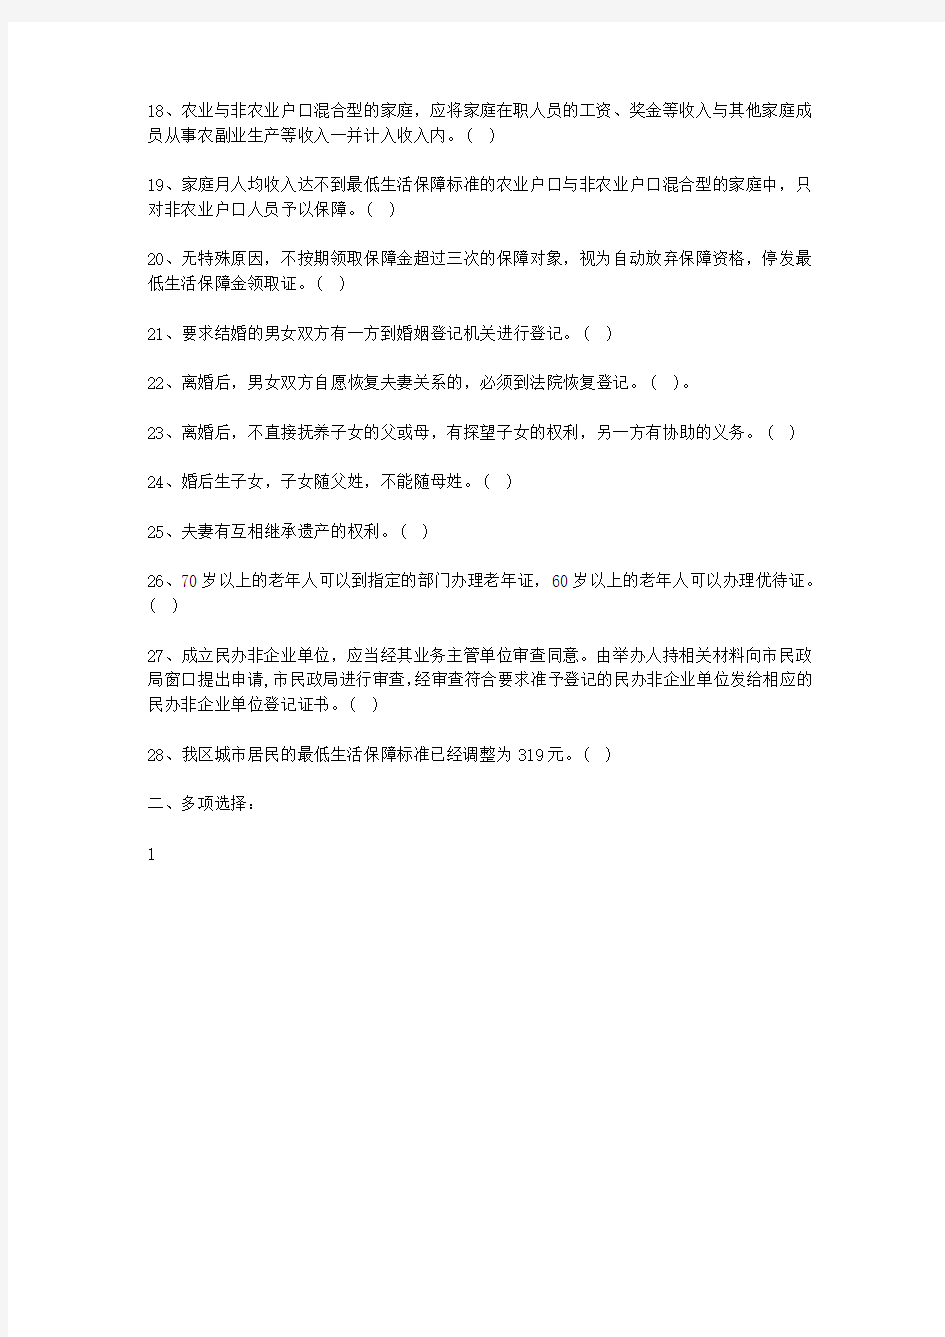 2013年四川省事业单位考试真题及答案